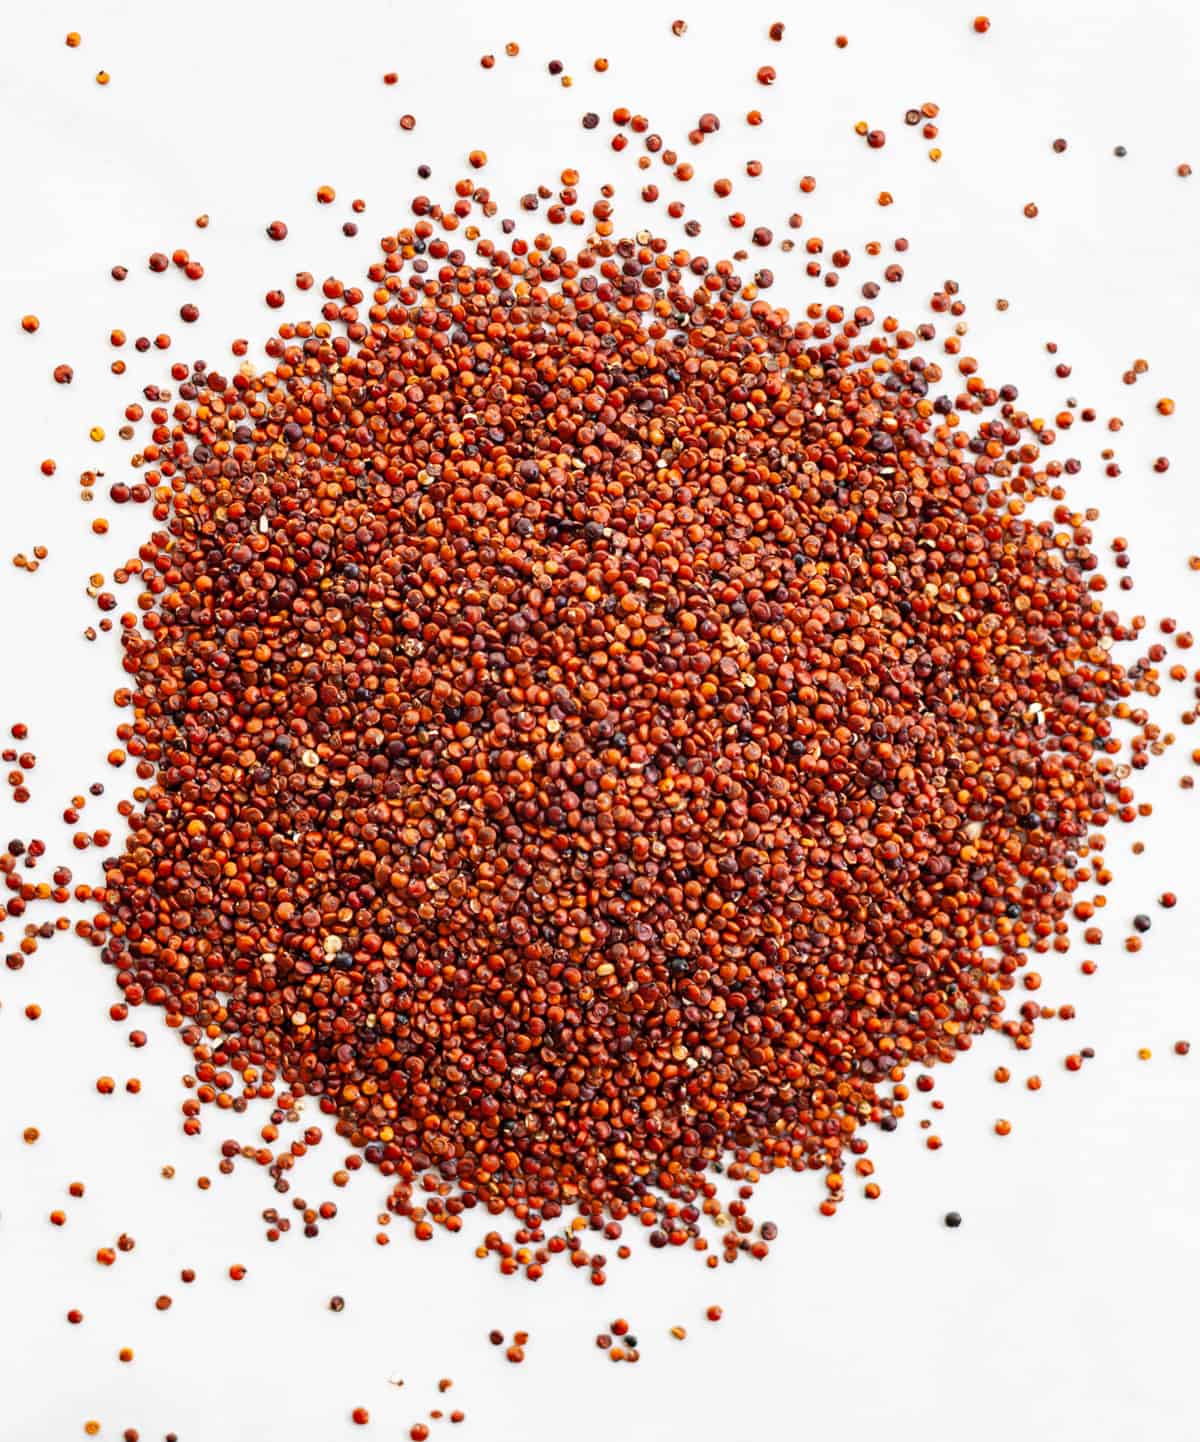 uncooked red quinoa